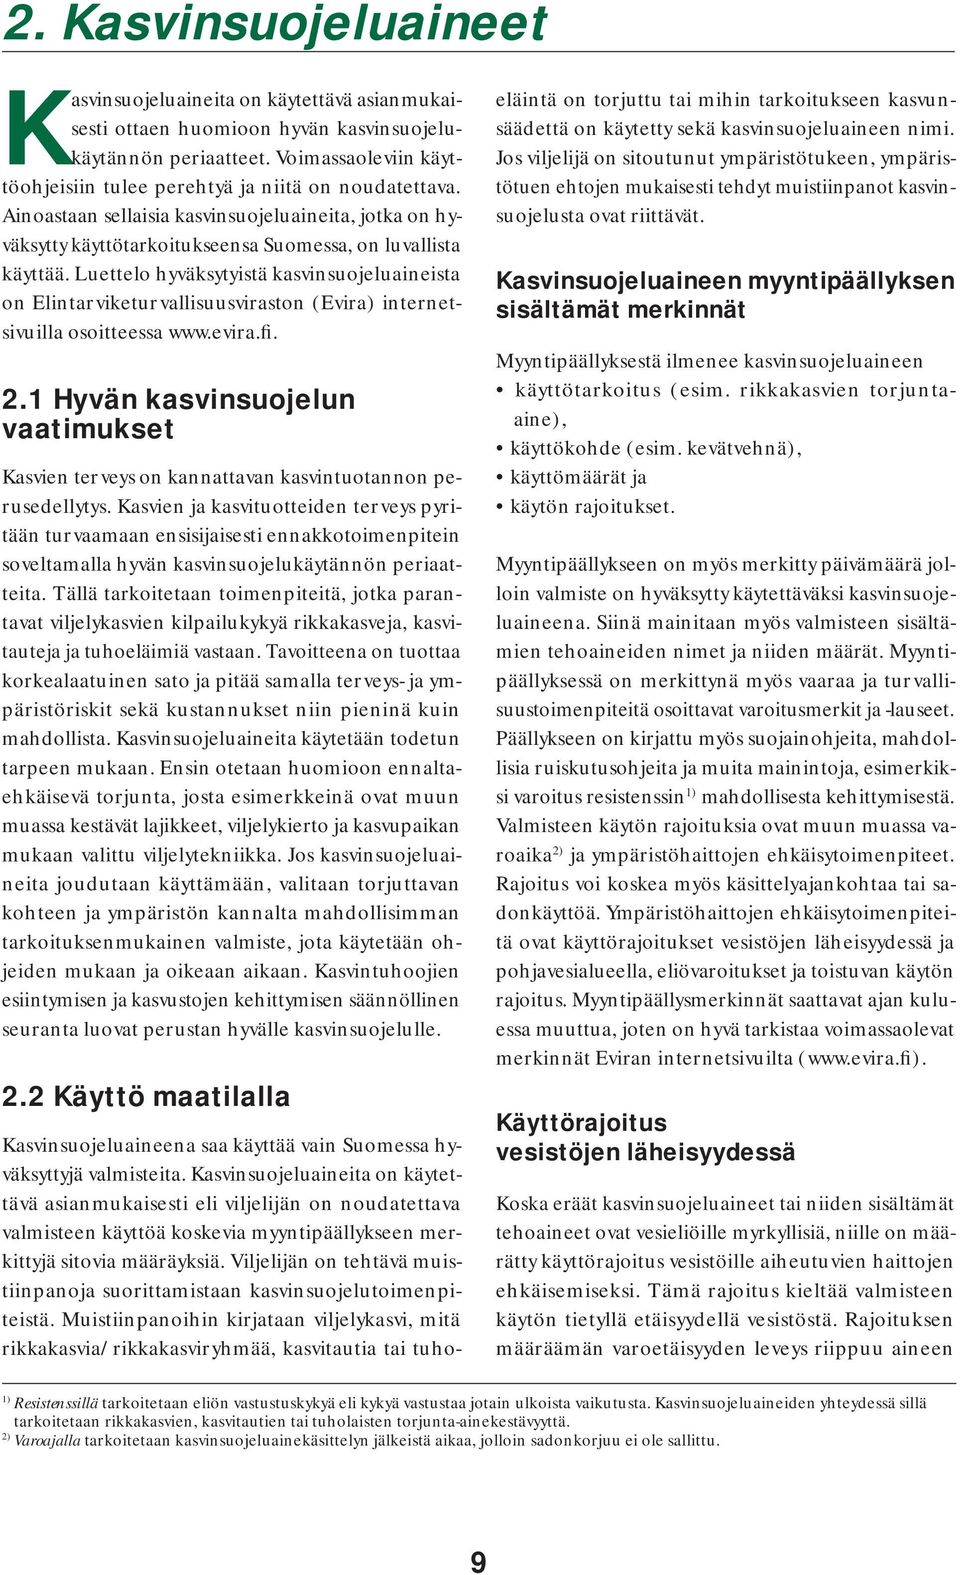 Luettelo hyväksytyistä kasvinsuojeluaineista on Elintarvike turvallisuus viraston (Evira) internetsivuilla osoitteessa www.evira.fi. 2.